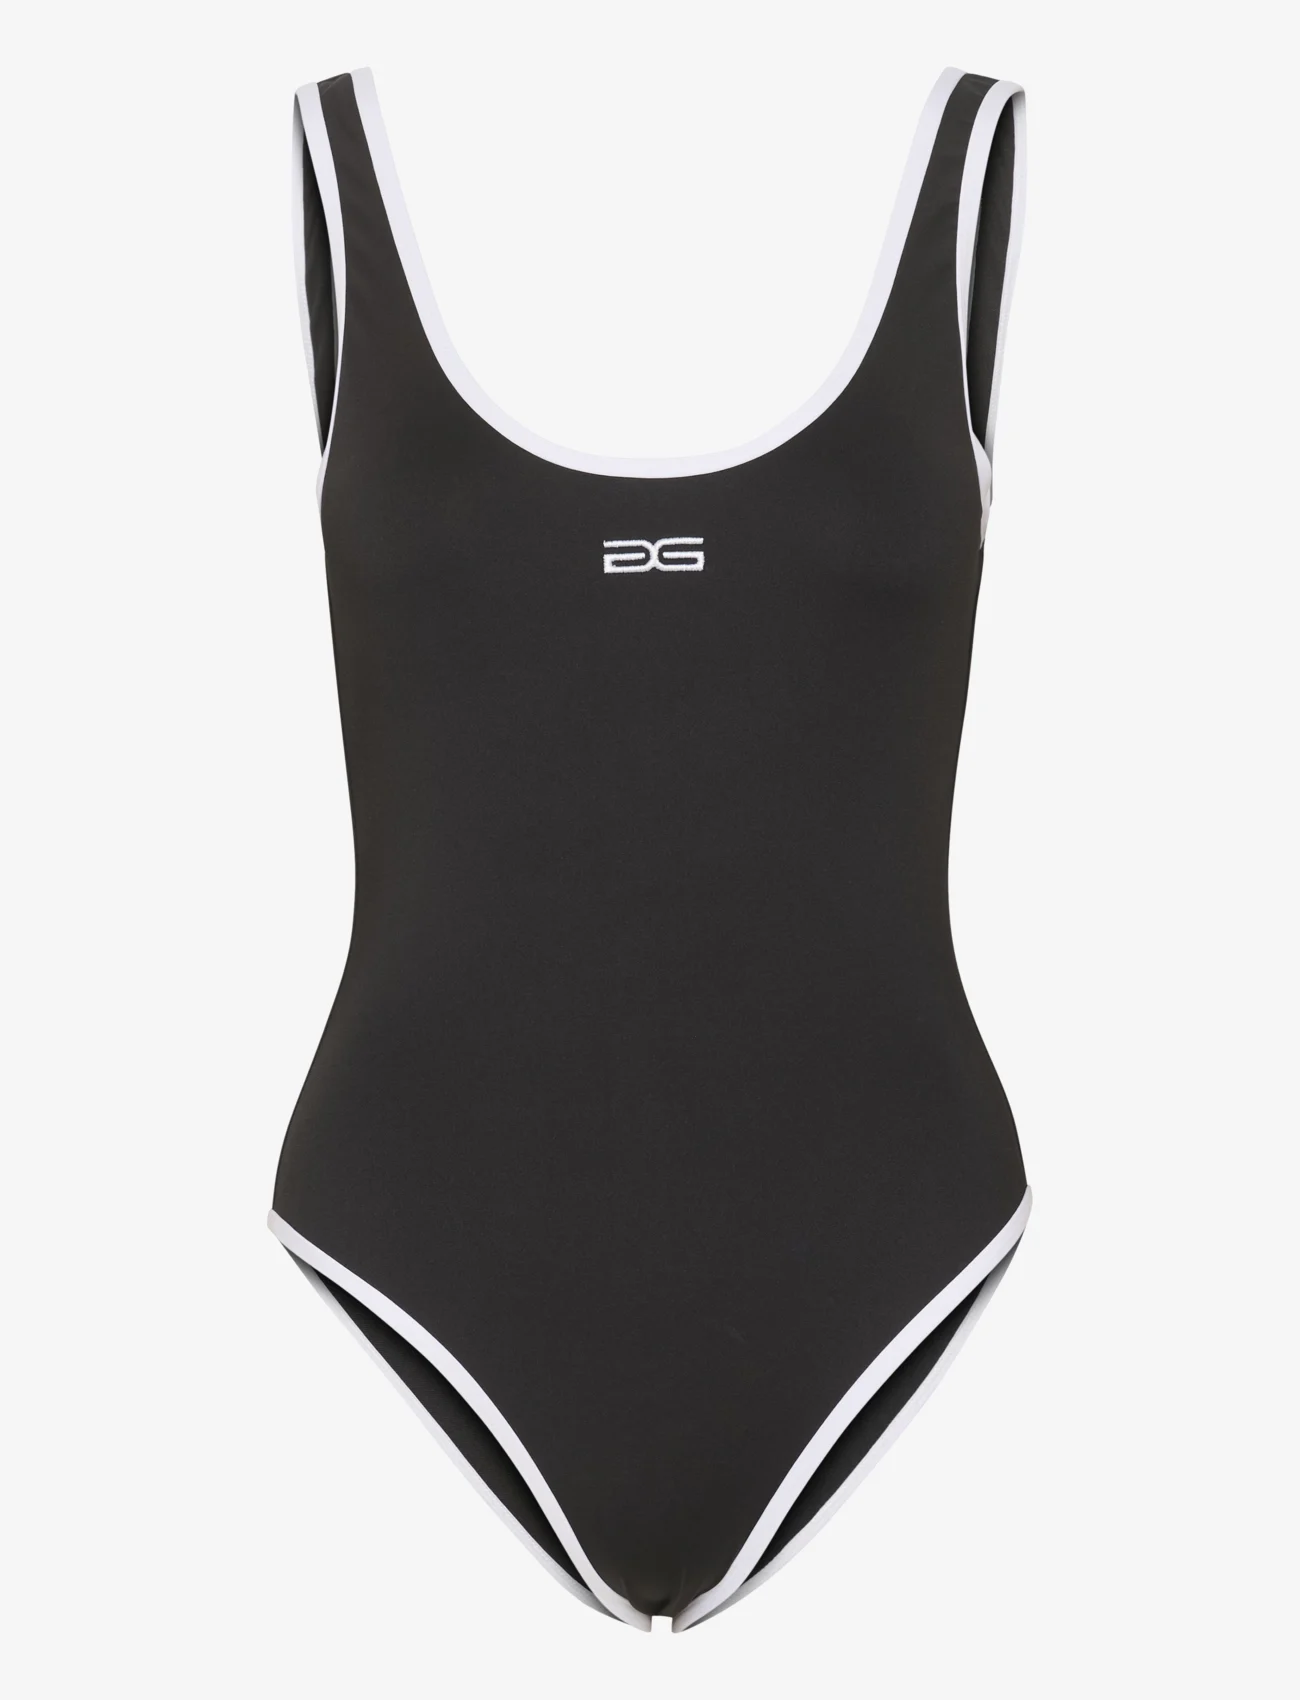 Gestuz - SifaGZ swimsuit - badedragter - black - 0